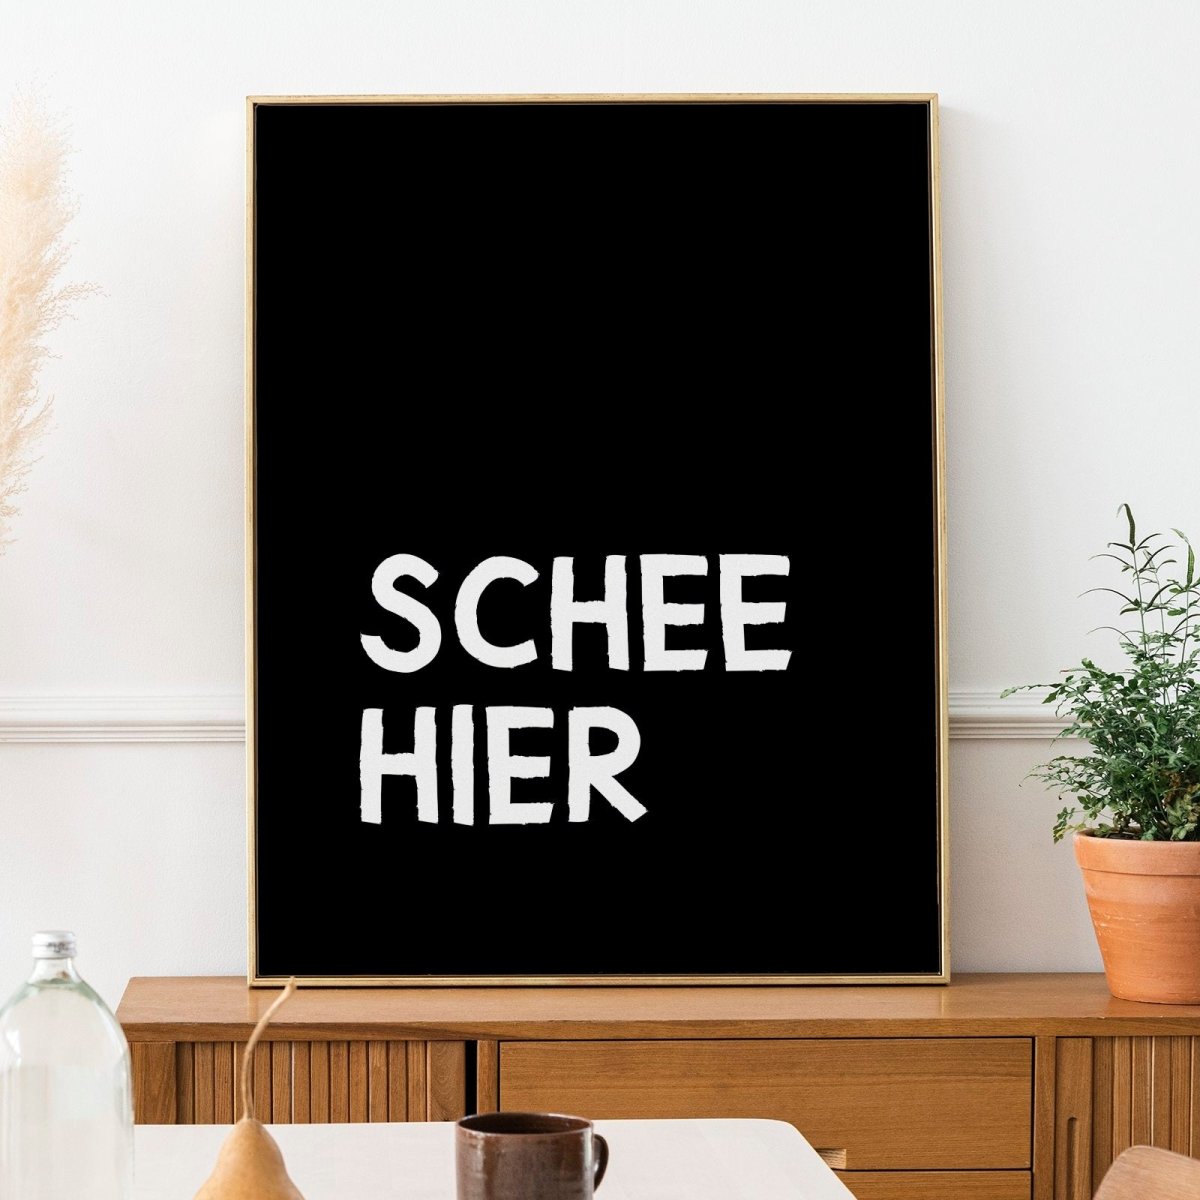 Schee hier • modernes bayerisches Poster mit lustigem Spruch - vonSUSI